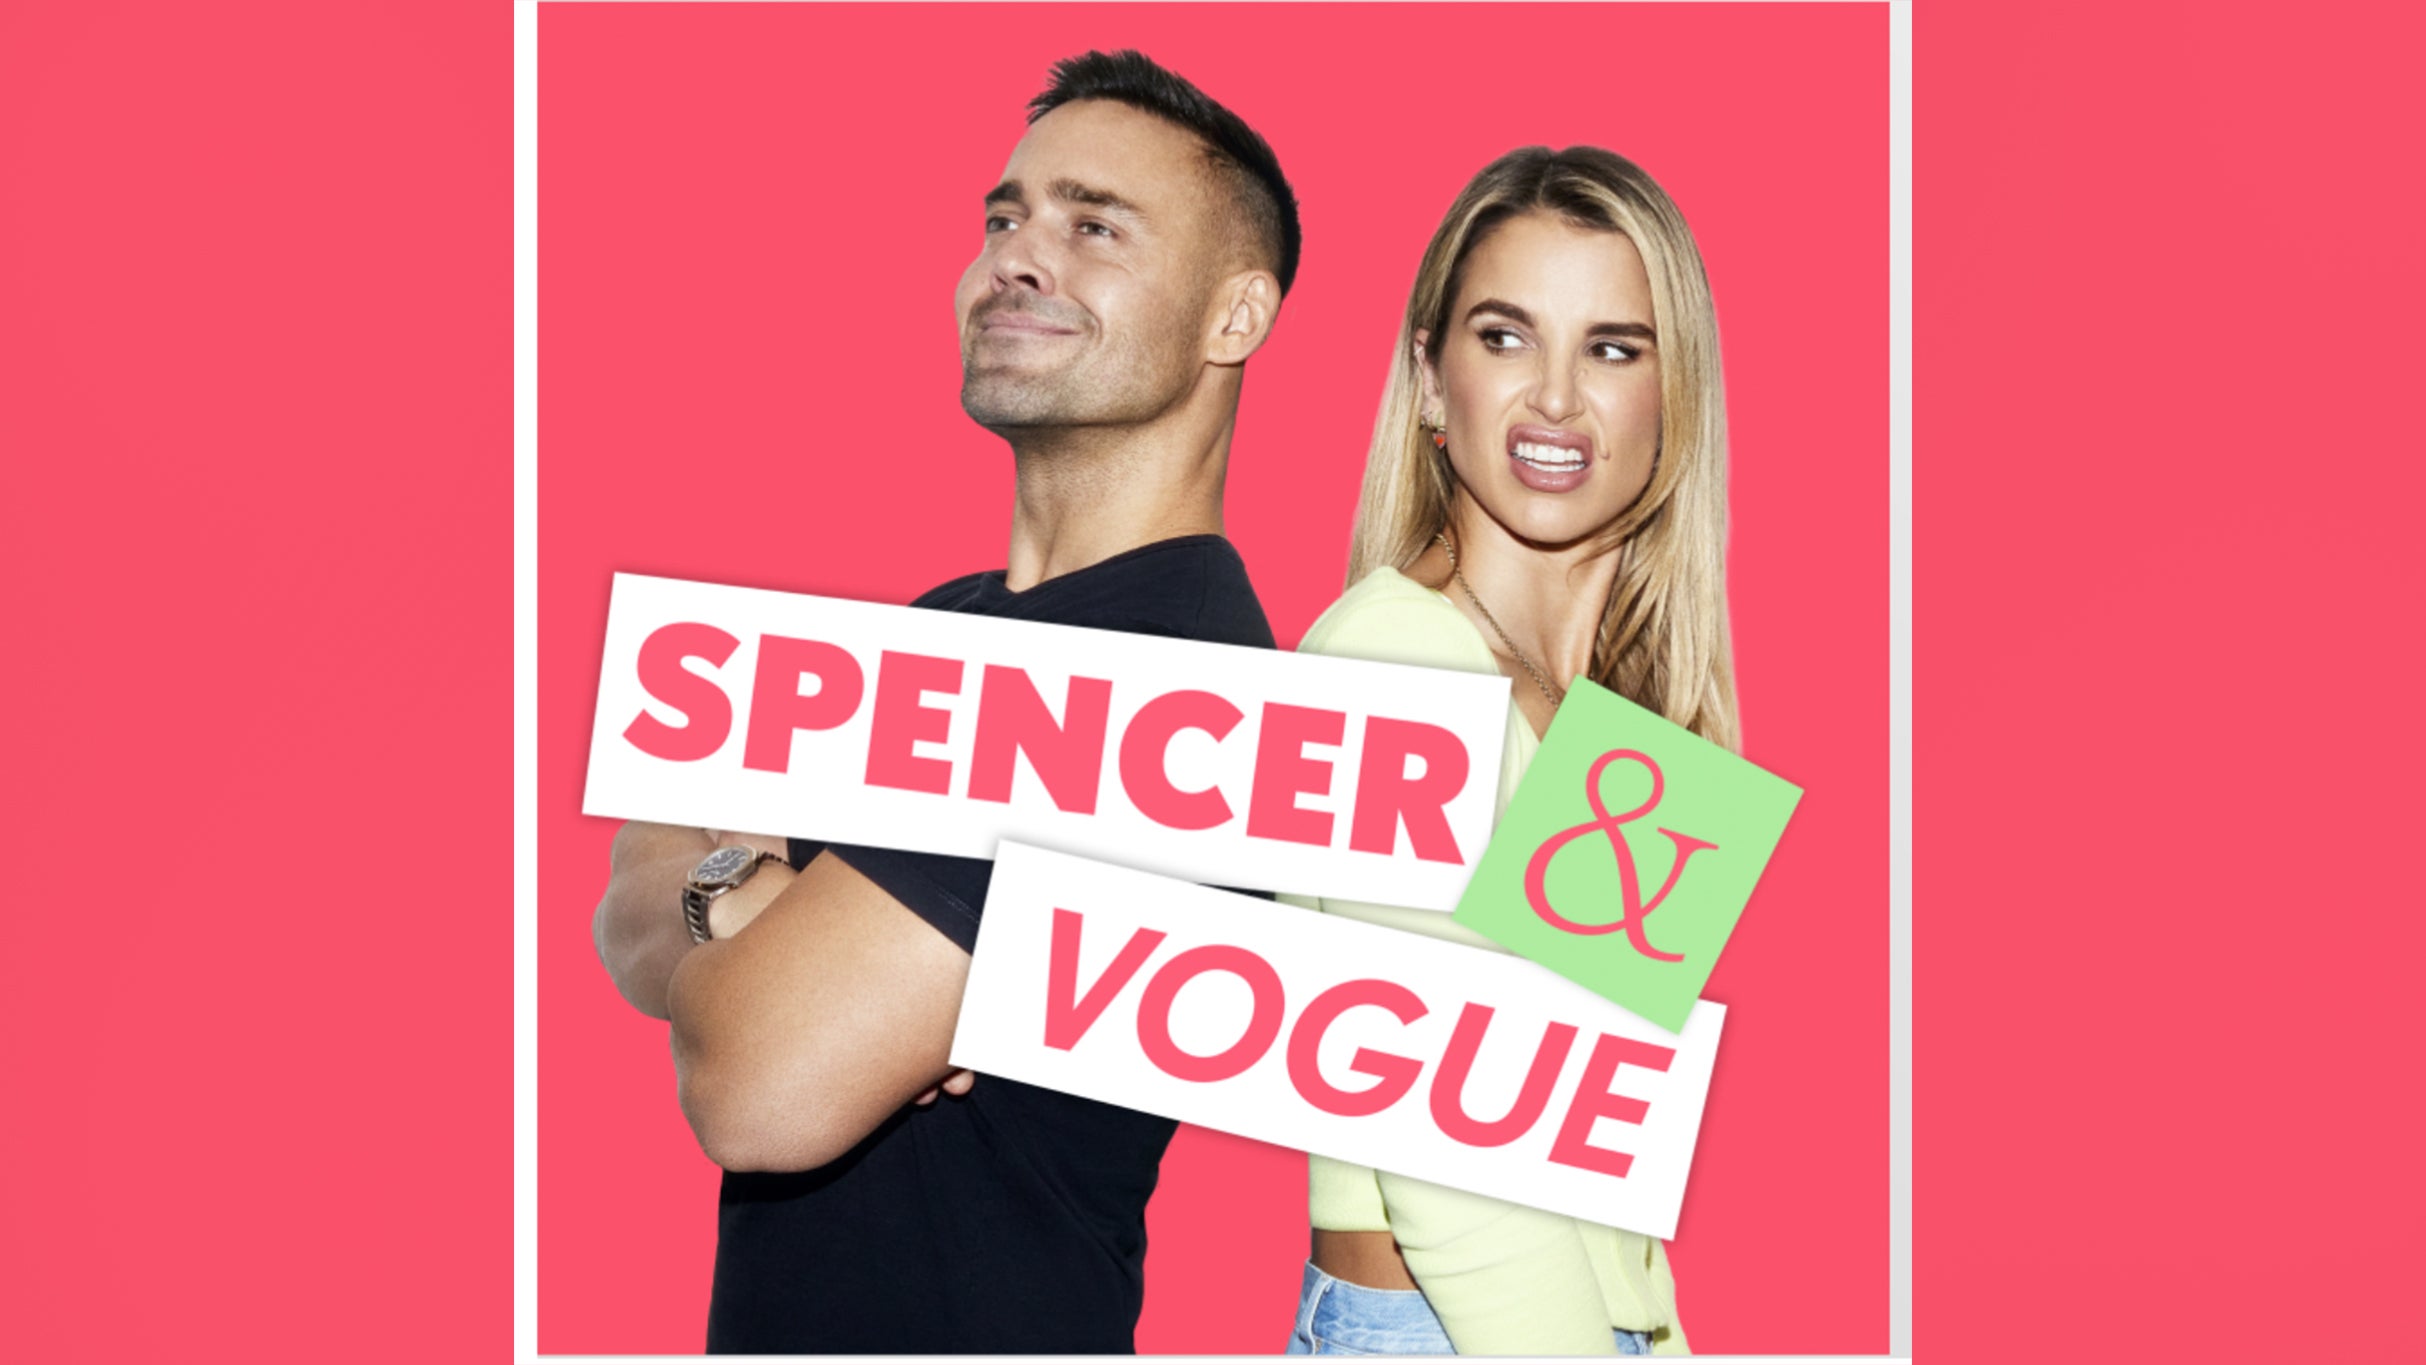 Spencer & Vogue in Dublin promo photo for Artist presale offer code